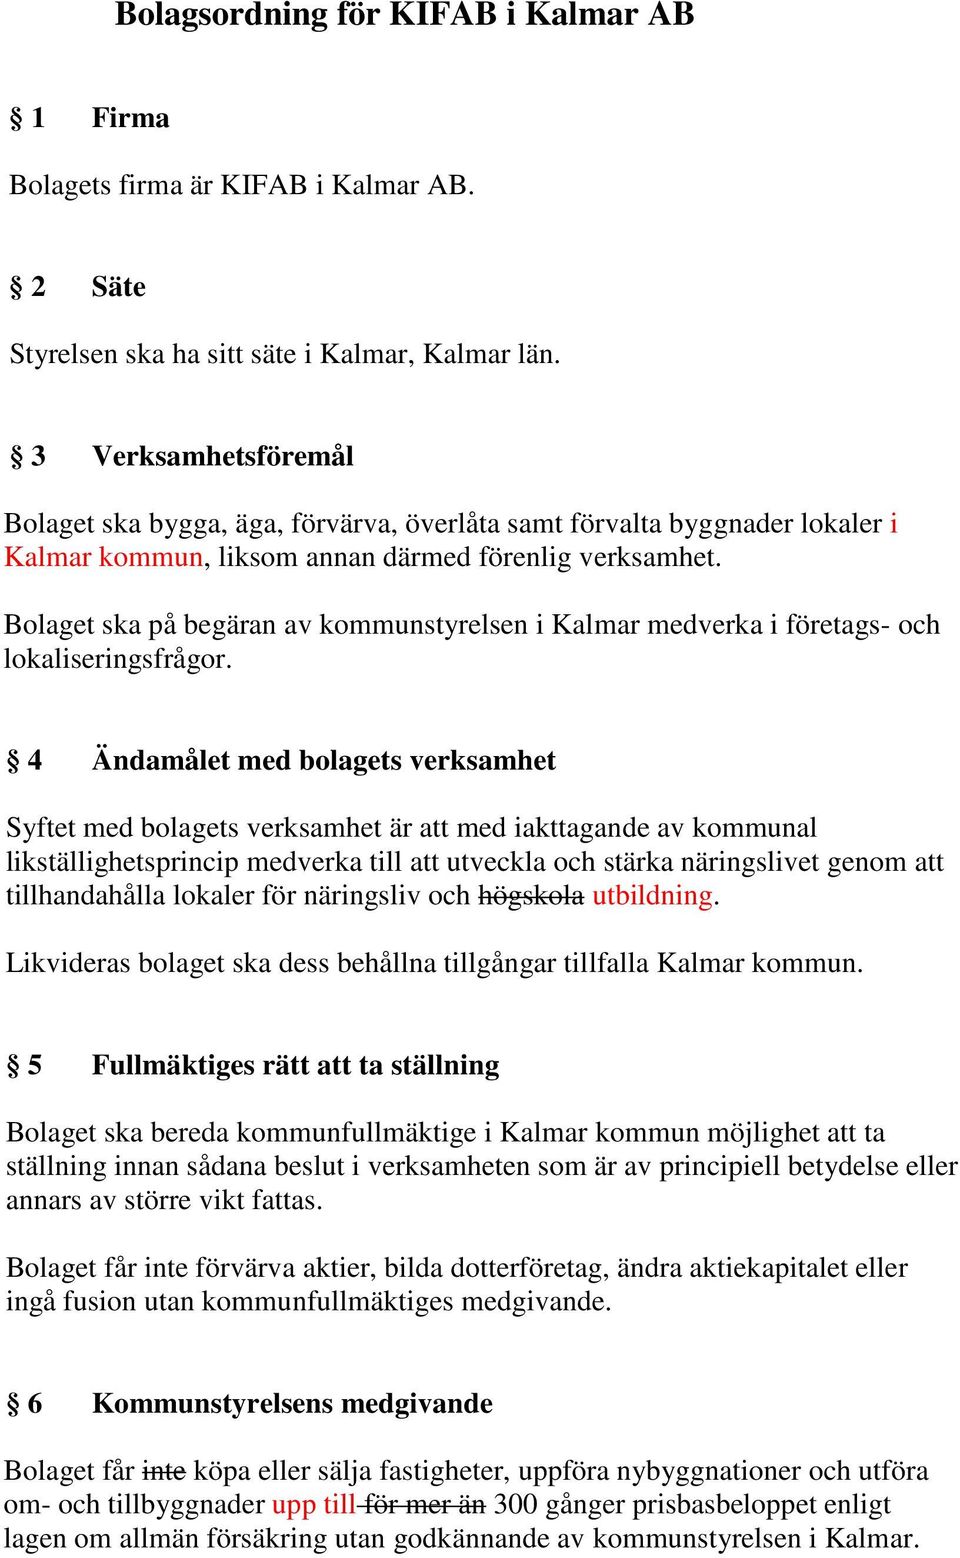 Bolaget ska på begäran av kommunstyrelsen i Kalmar medverka i företags- och lokaliseringsfrågor.